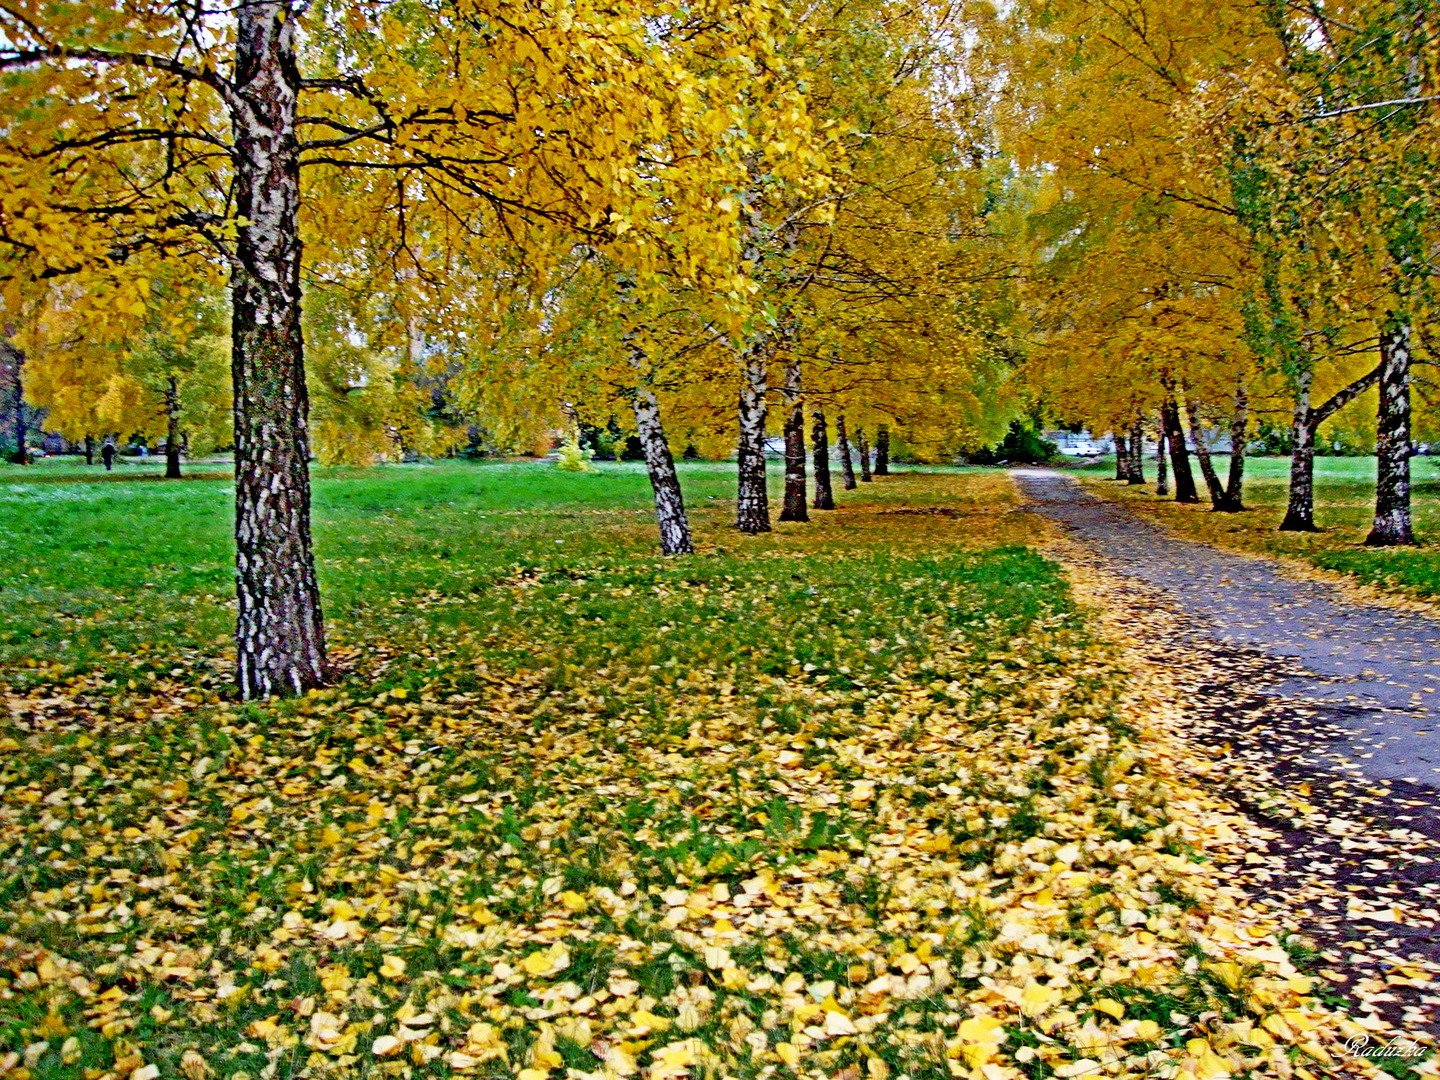 Гулял октябрь. Солнечный октябрь в парке. Аллейка. Осень в Кузнецке. Ночной Ливны осень.